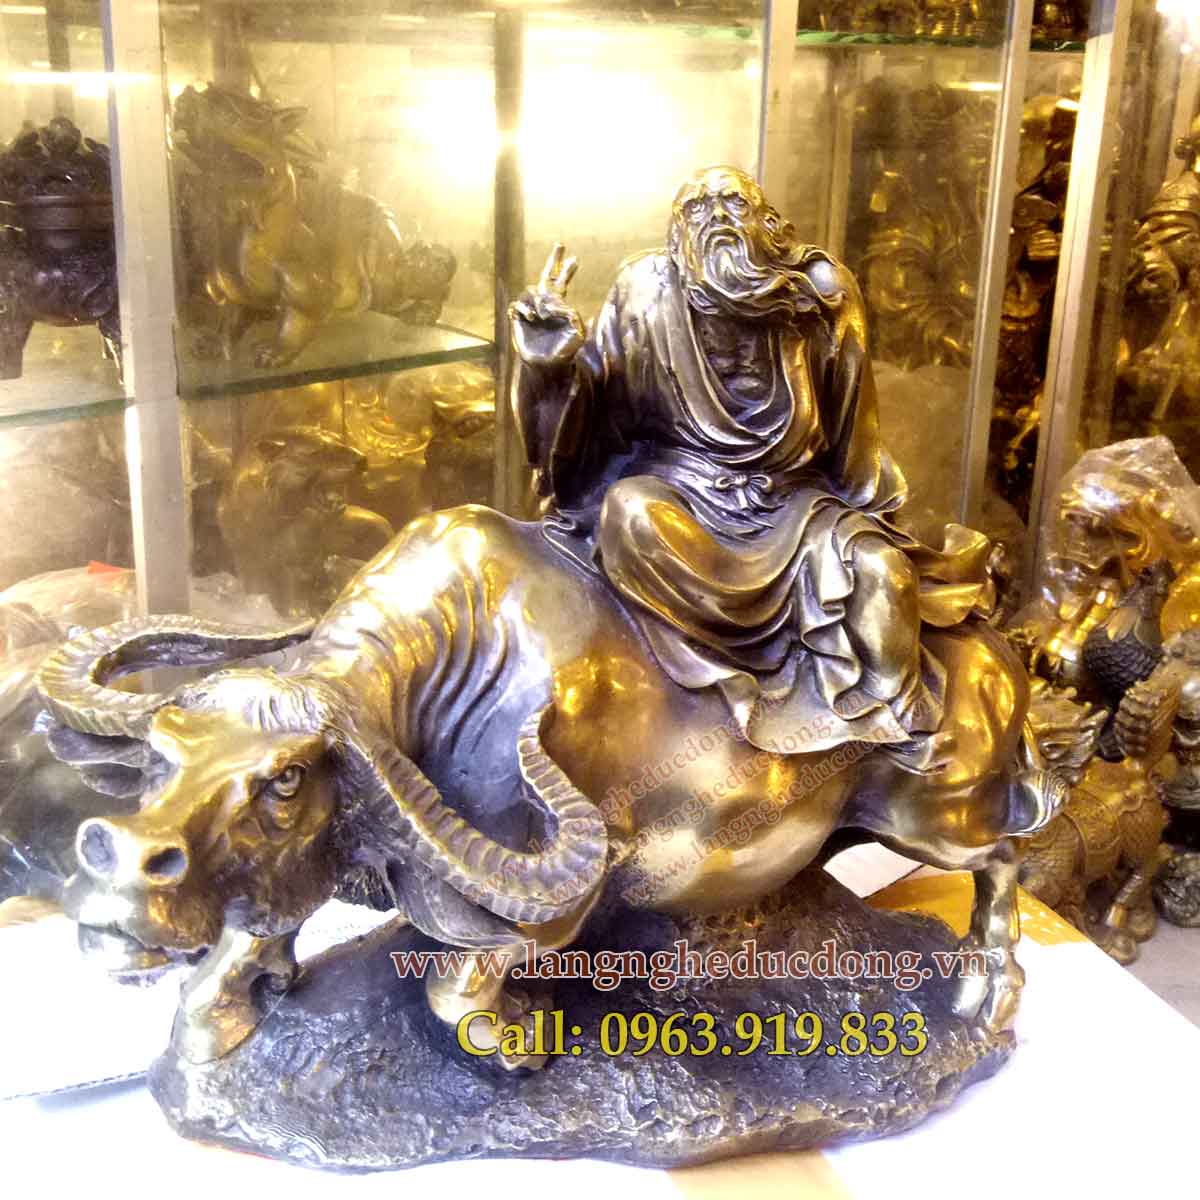 langnghedudong.vn - tượng đồng, tượng phong thủy, tượng lão tử cưỡi trâu, lão tử, lão tử bằng đồng